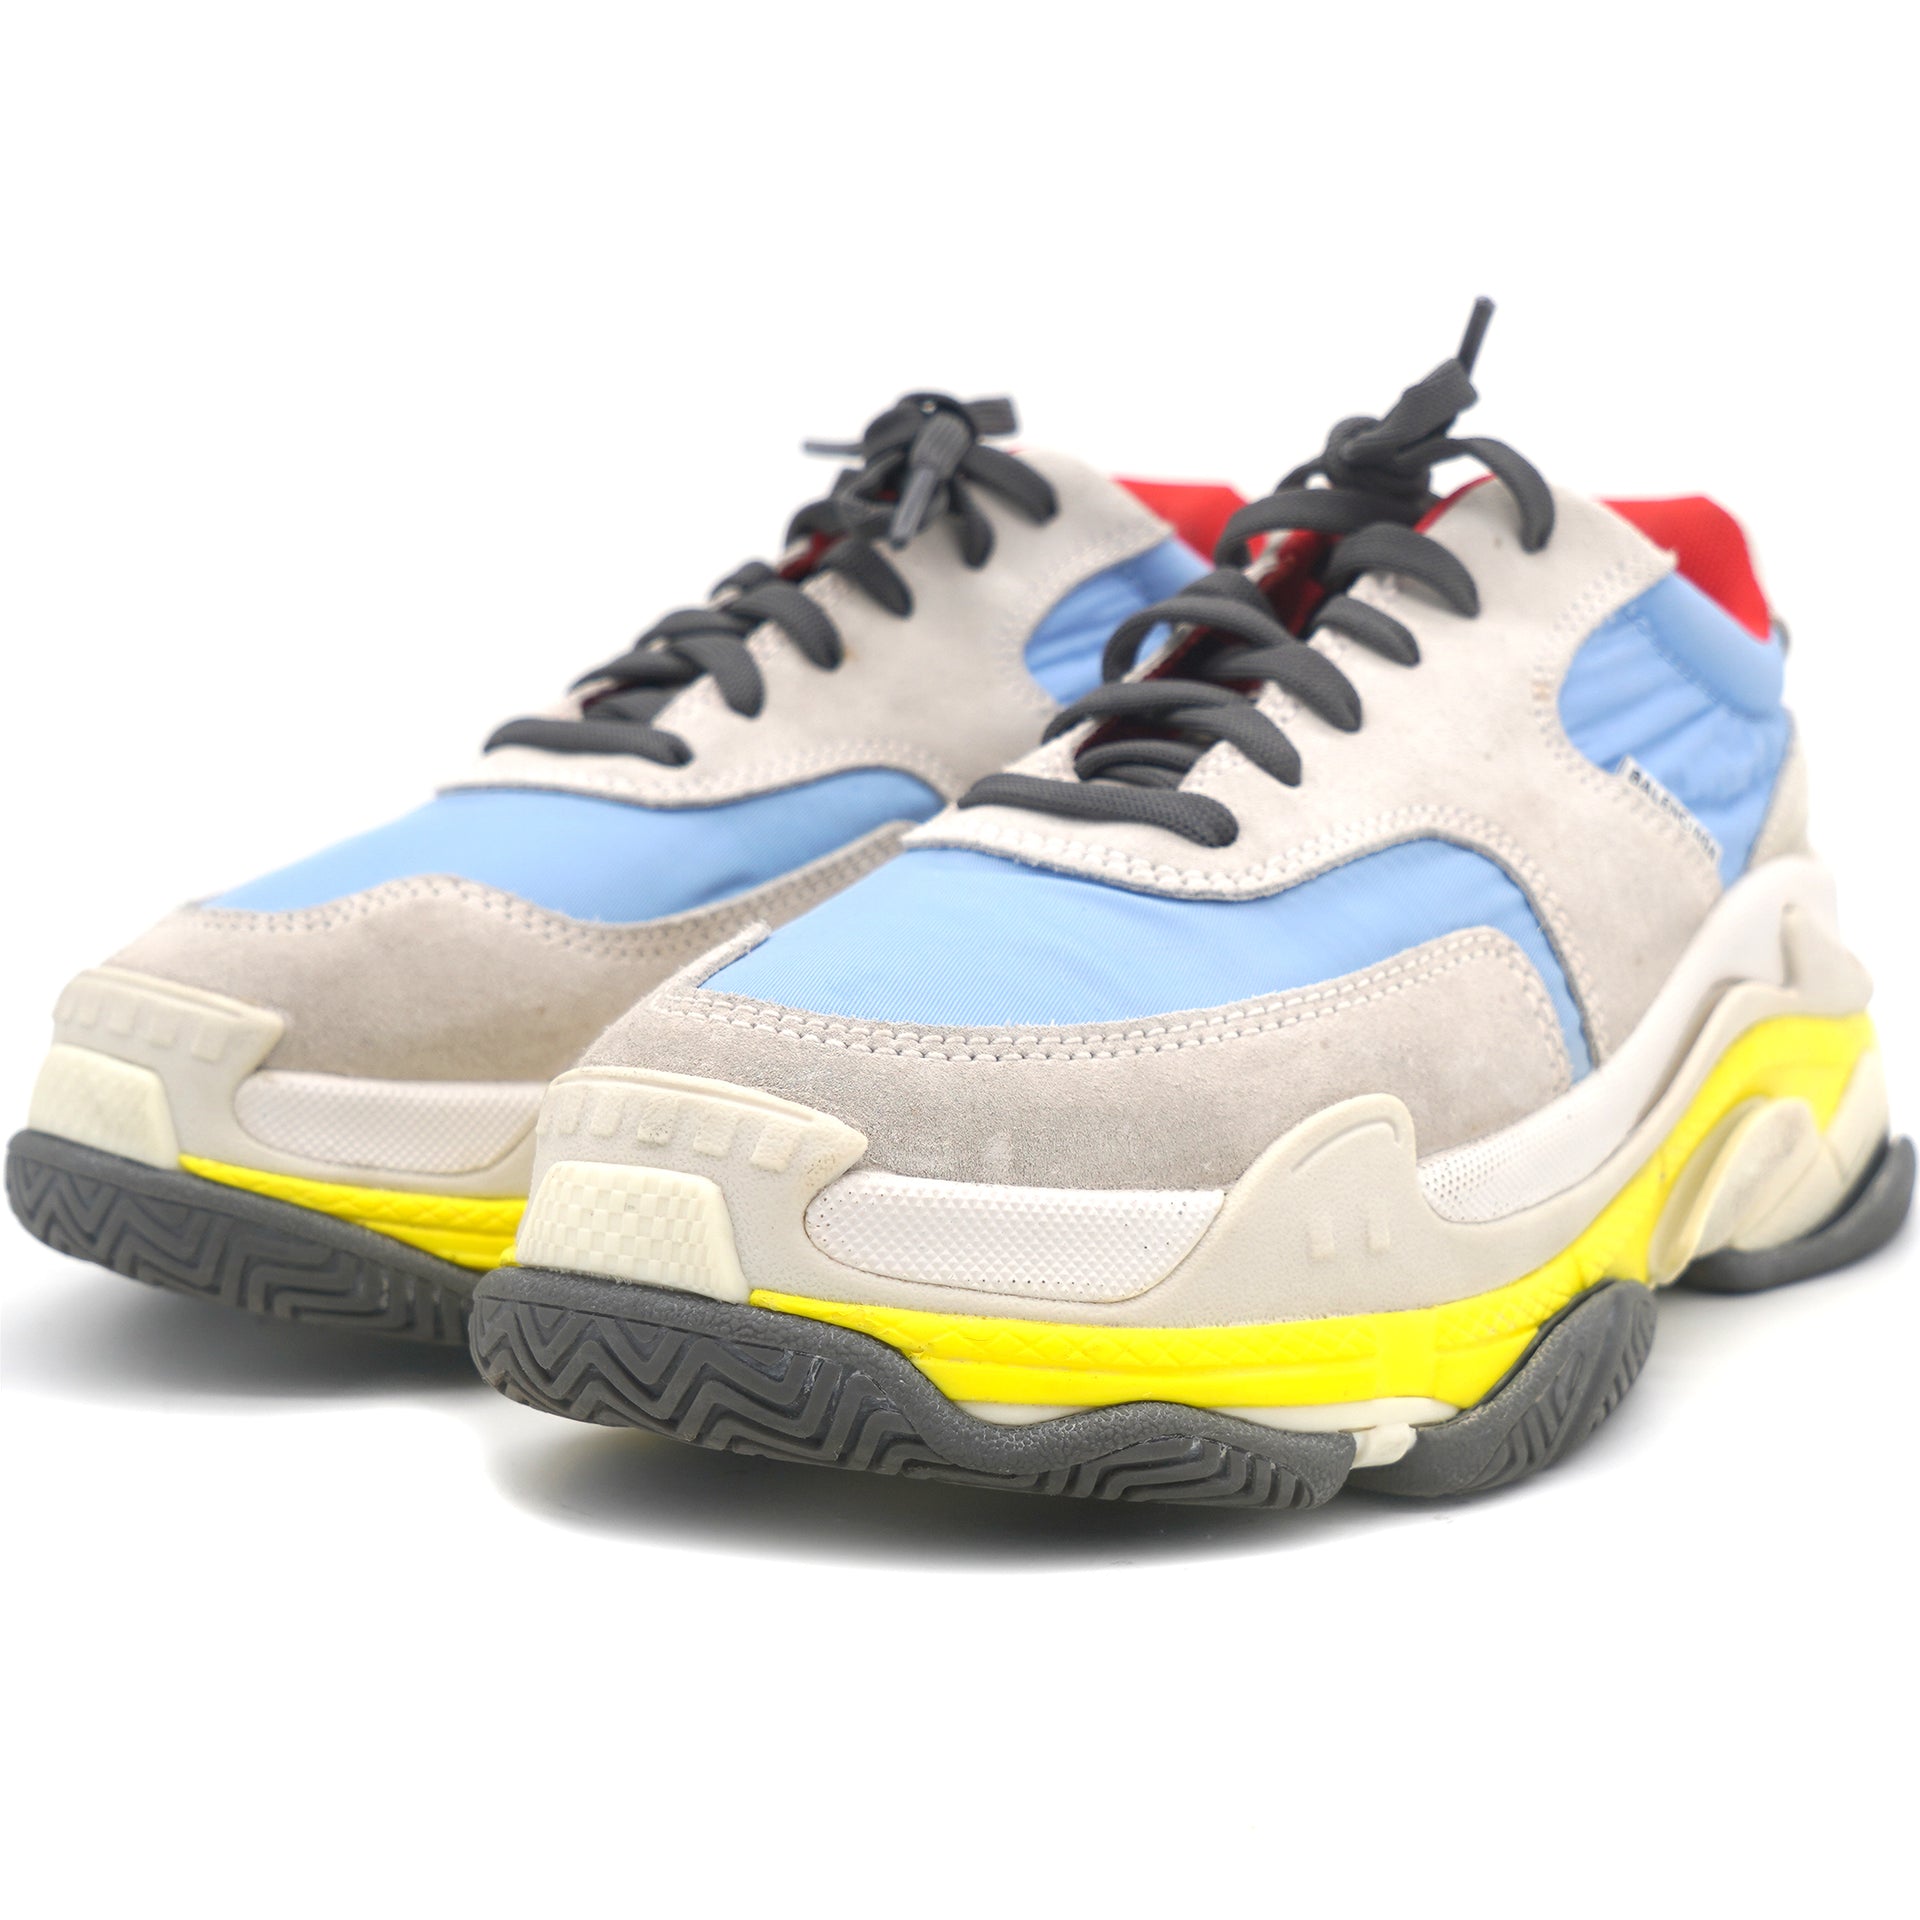 White & Multicolor Suede & Nylon Triple S Sneakers 38